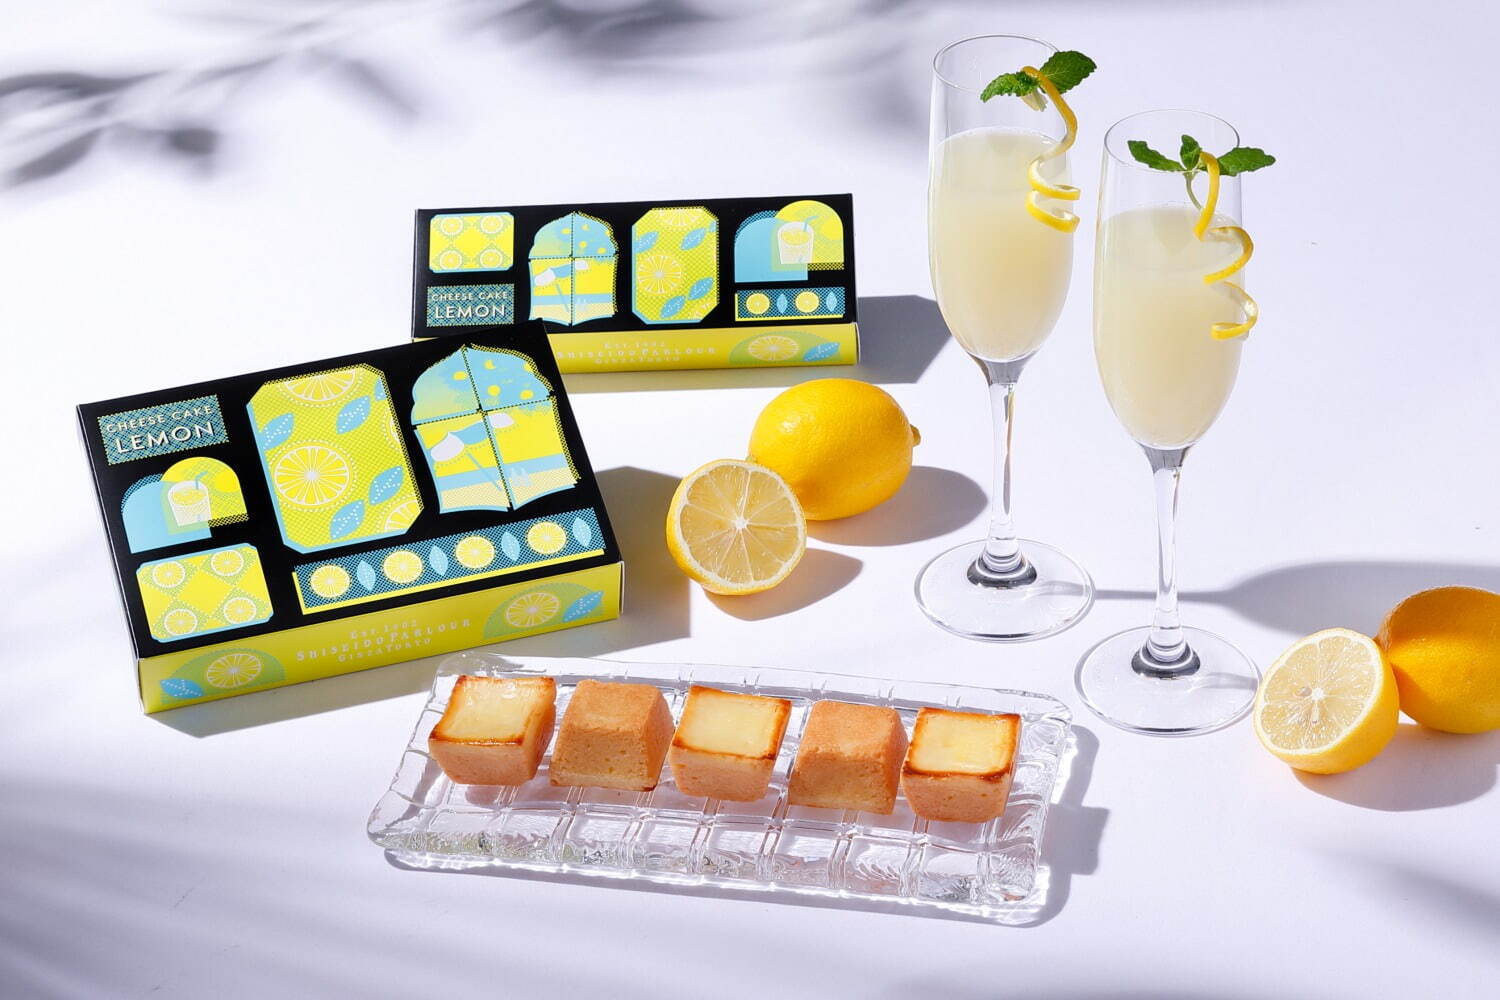 「夏のチーズケーキ(レモン)」3個入 1,080円、6個入 2,160円